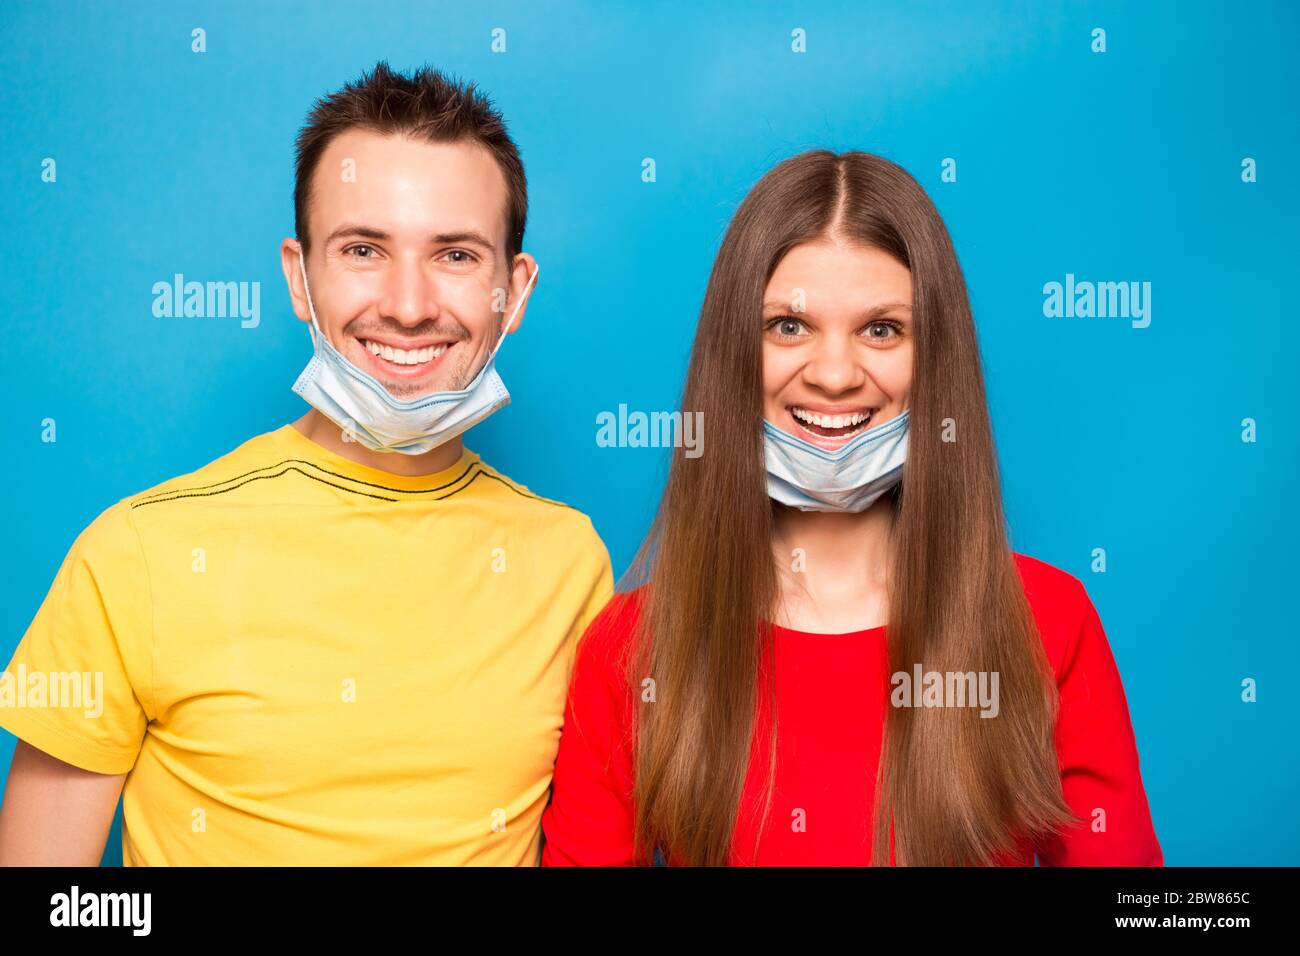 Happy Love coppia rimuovere maschera protettiva isolata su sfondo blu. Fine della pandemia di coronavirus, quarantena, autoisolamento. La crisi del Covid-19 è finita Foto Stock